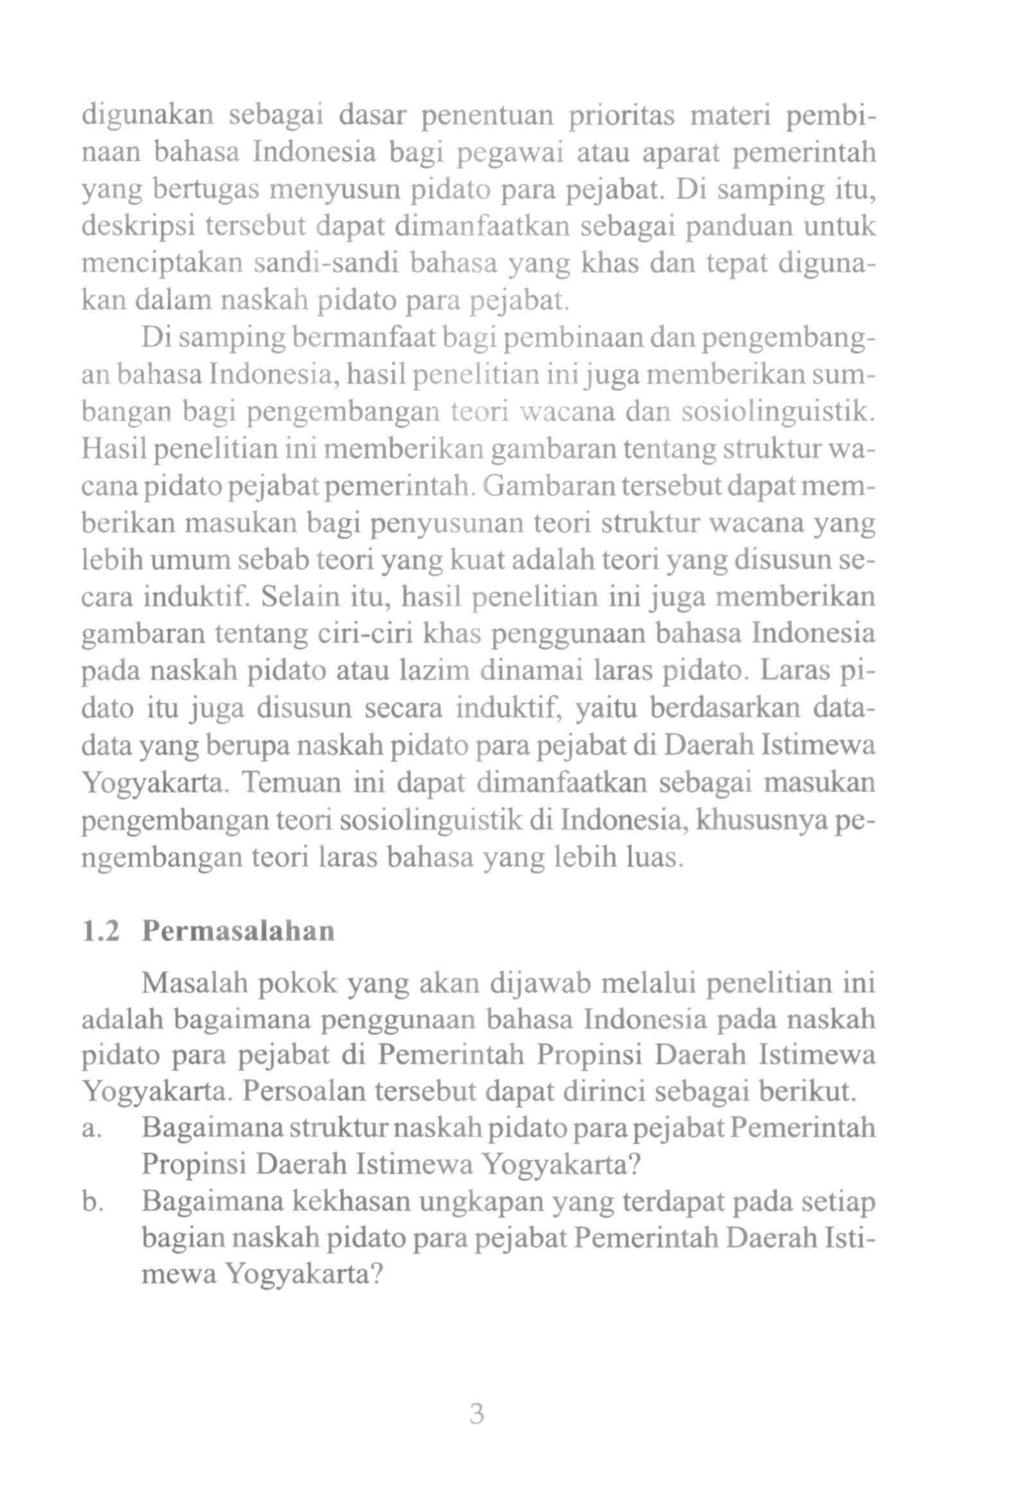 Laras Pidato Dalam Bahasa Indonesia Kajian Pada Naskah Pidato Pejabat Pemerintah Diy Balaibahasayogyakarta Wiwin Erni S N Pdf Free Download